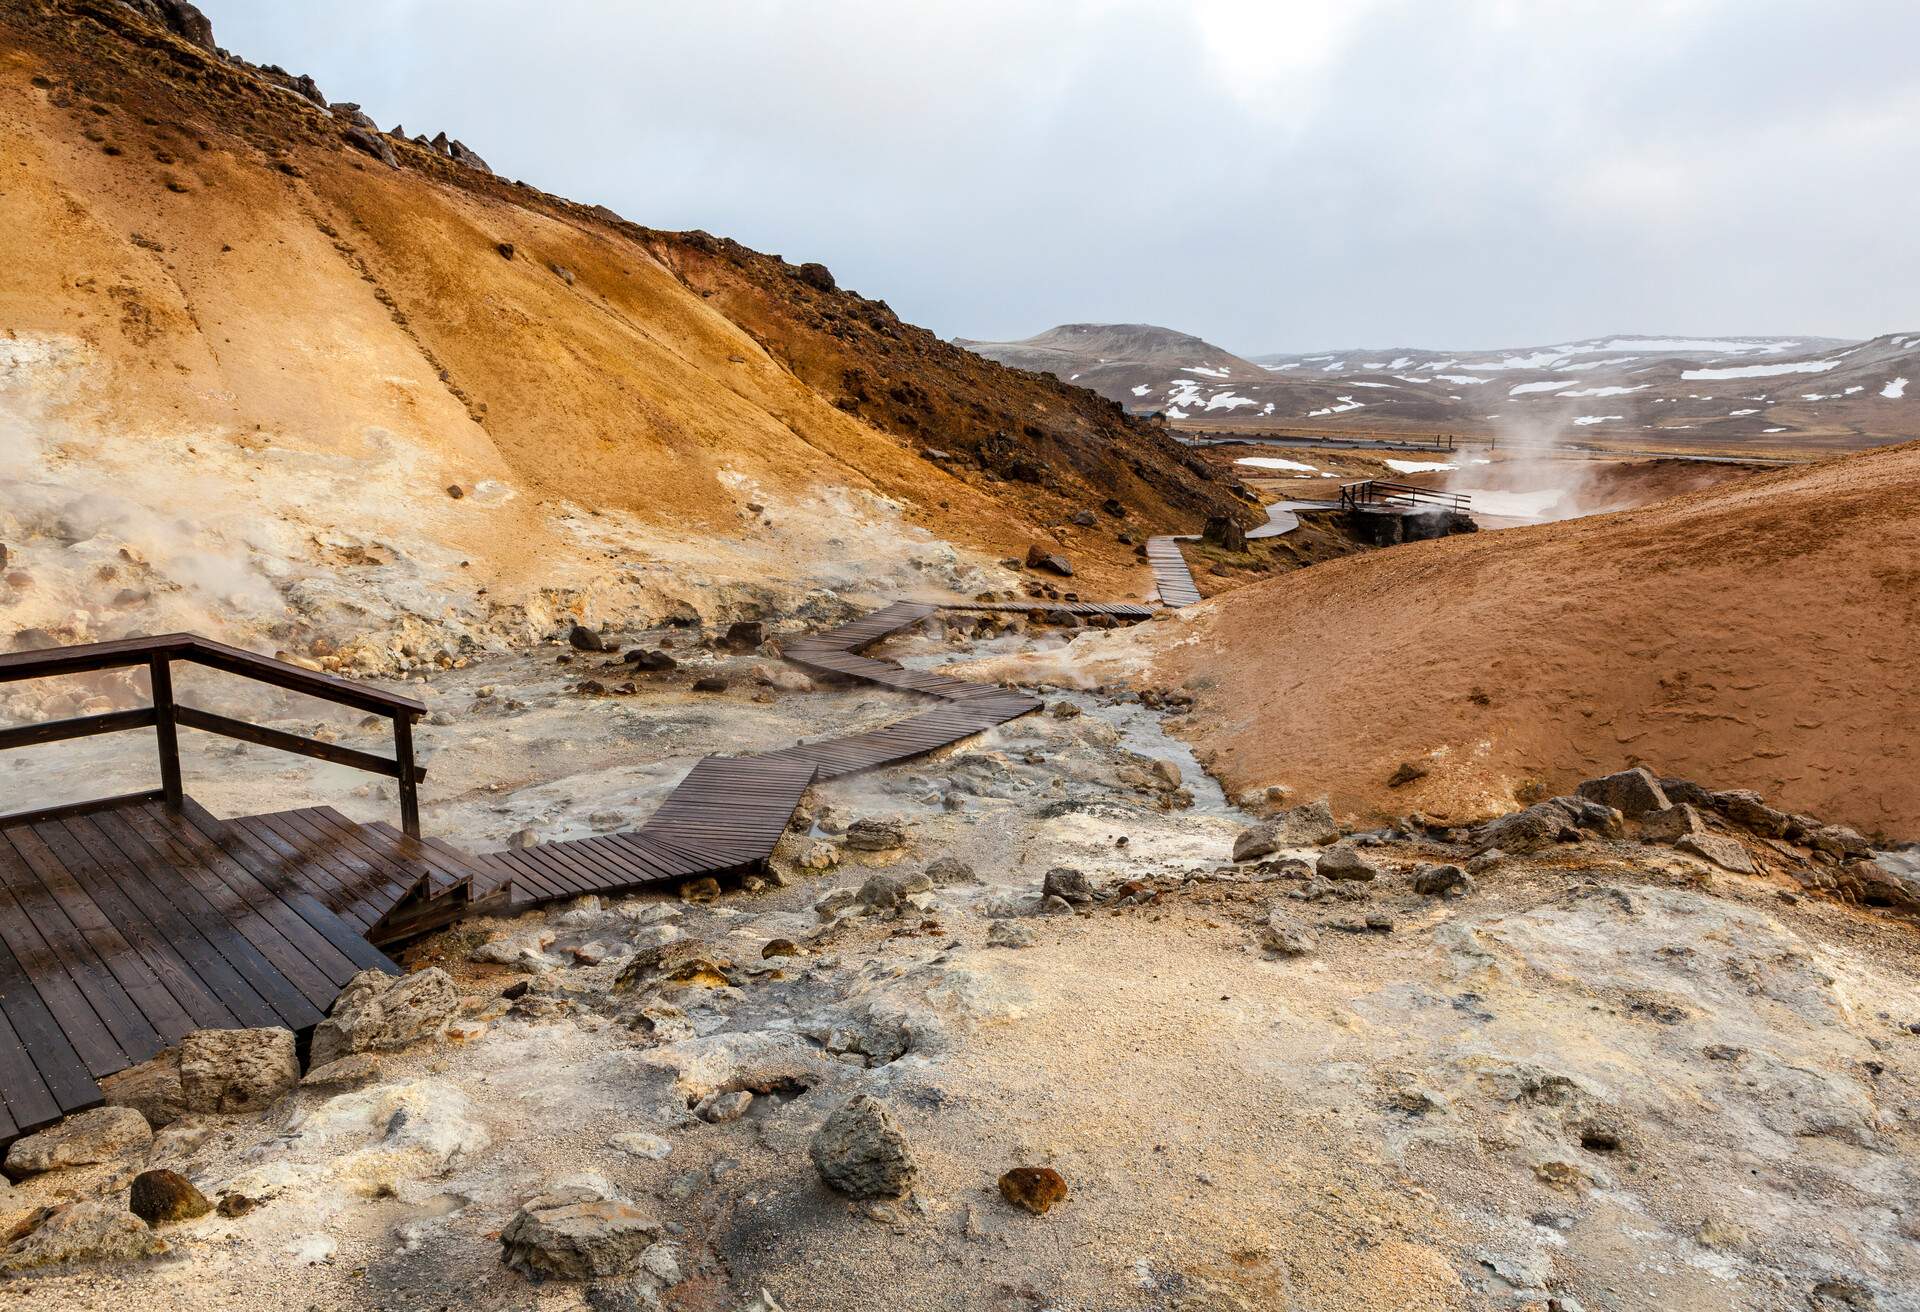 Seltún in the geothermal area of Krýsuvík in south west Iceland